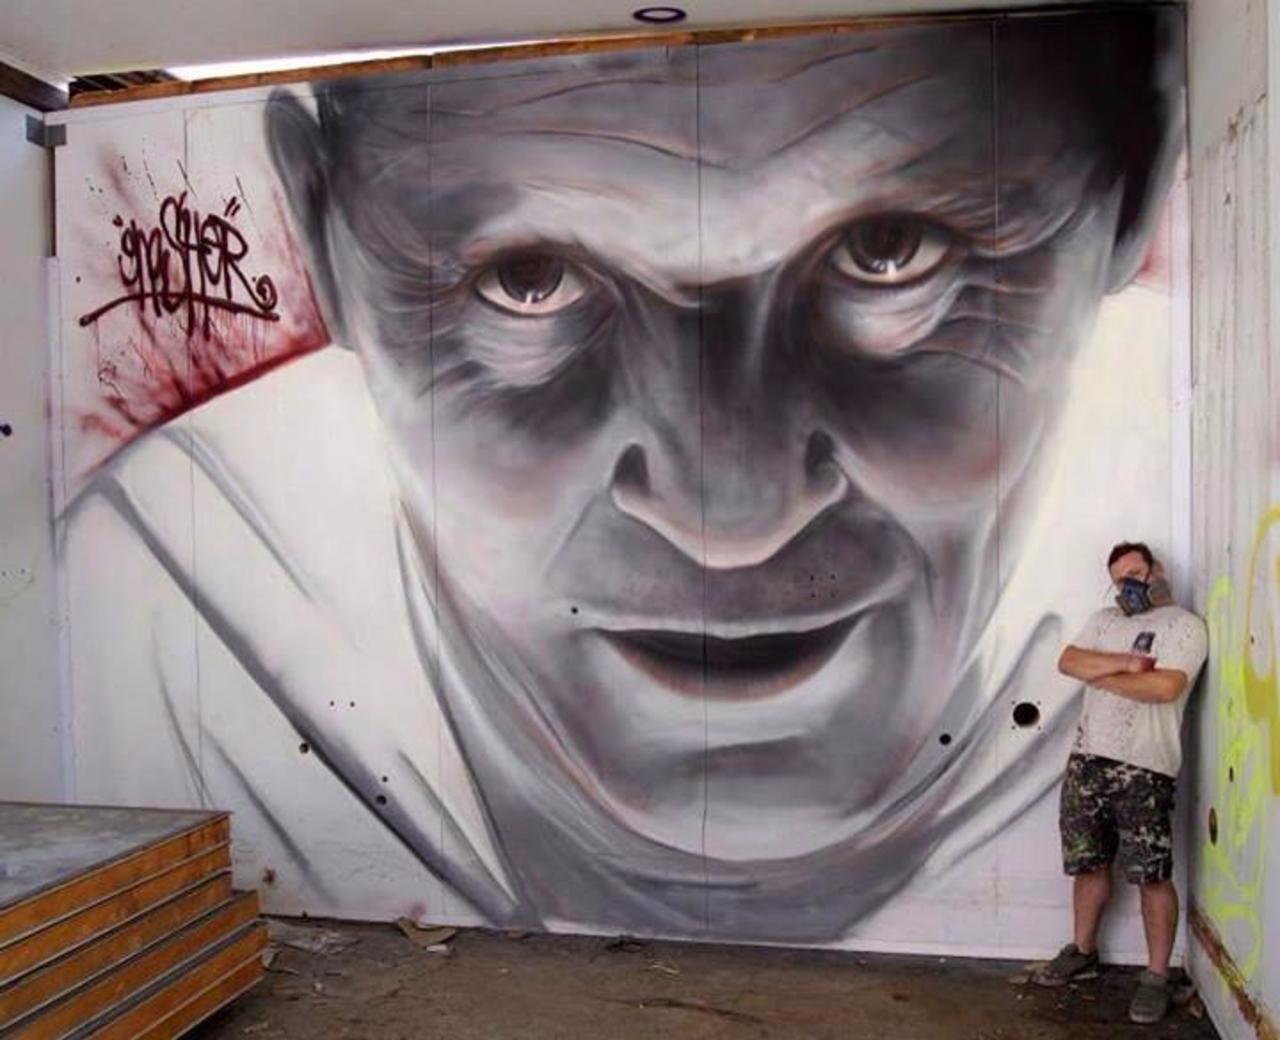 Artist @GnasherMurals new portrait of Hannibal Lector #art #graffiti #mural #streetart http://t.co/M731gc6odn
v/ @designopinion